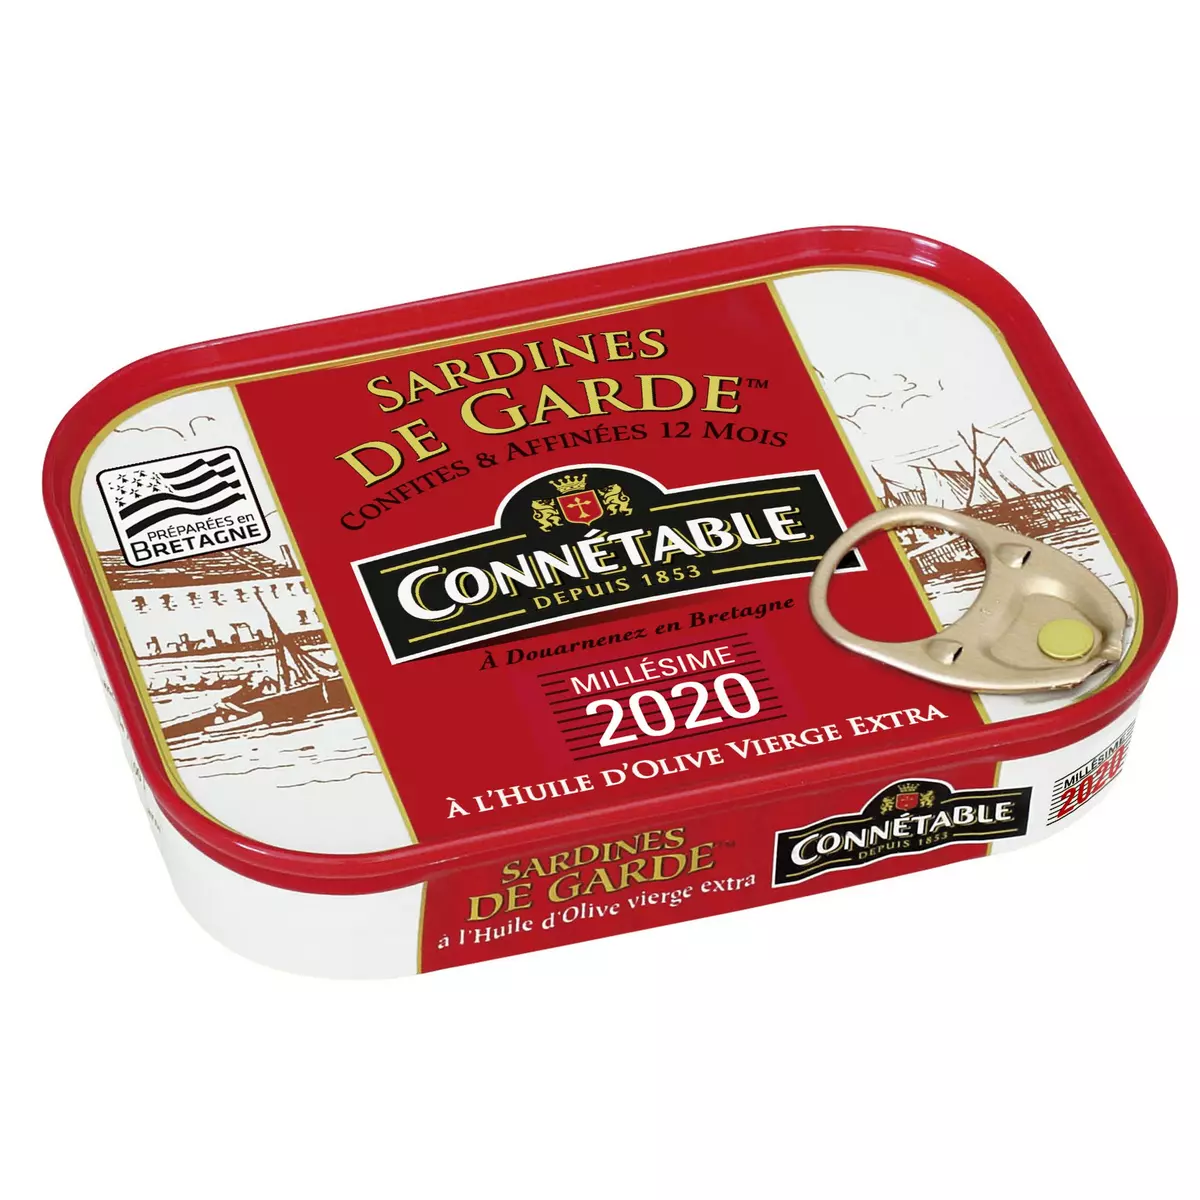 CONNETABLE Sardines de garde millésime 2017 à l'huile d'olive, préparées en Bretagne 115g